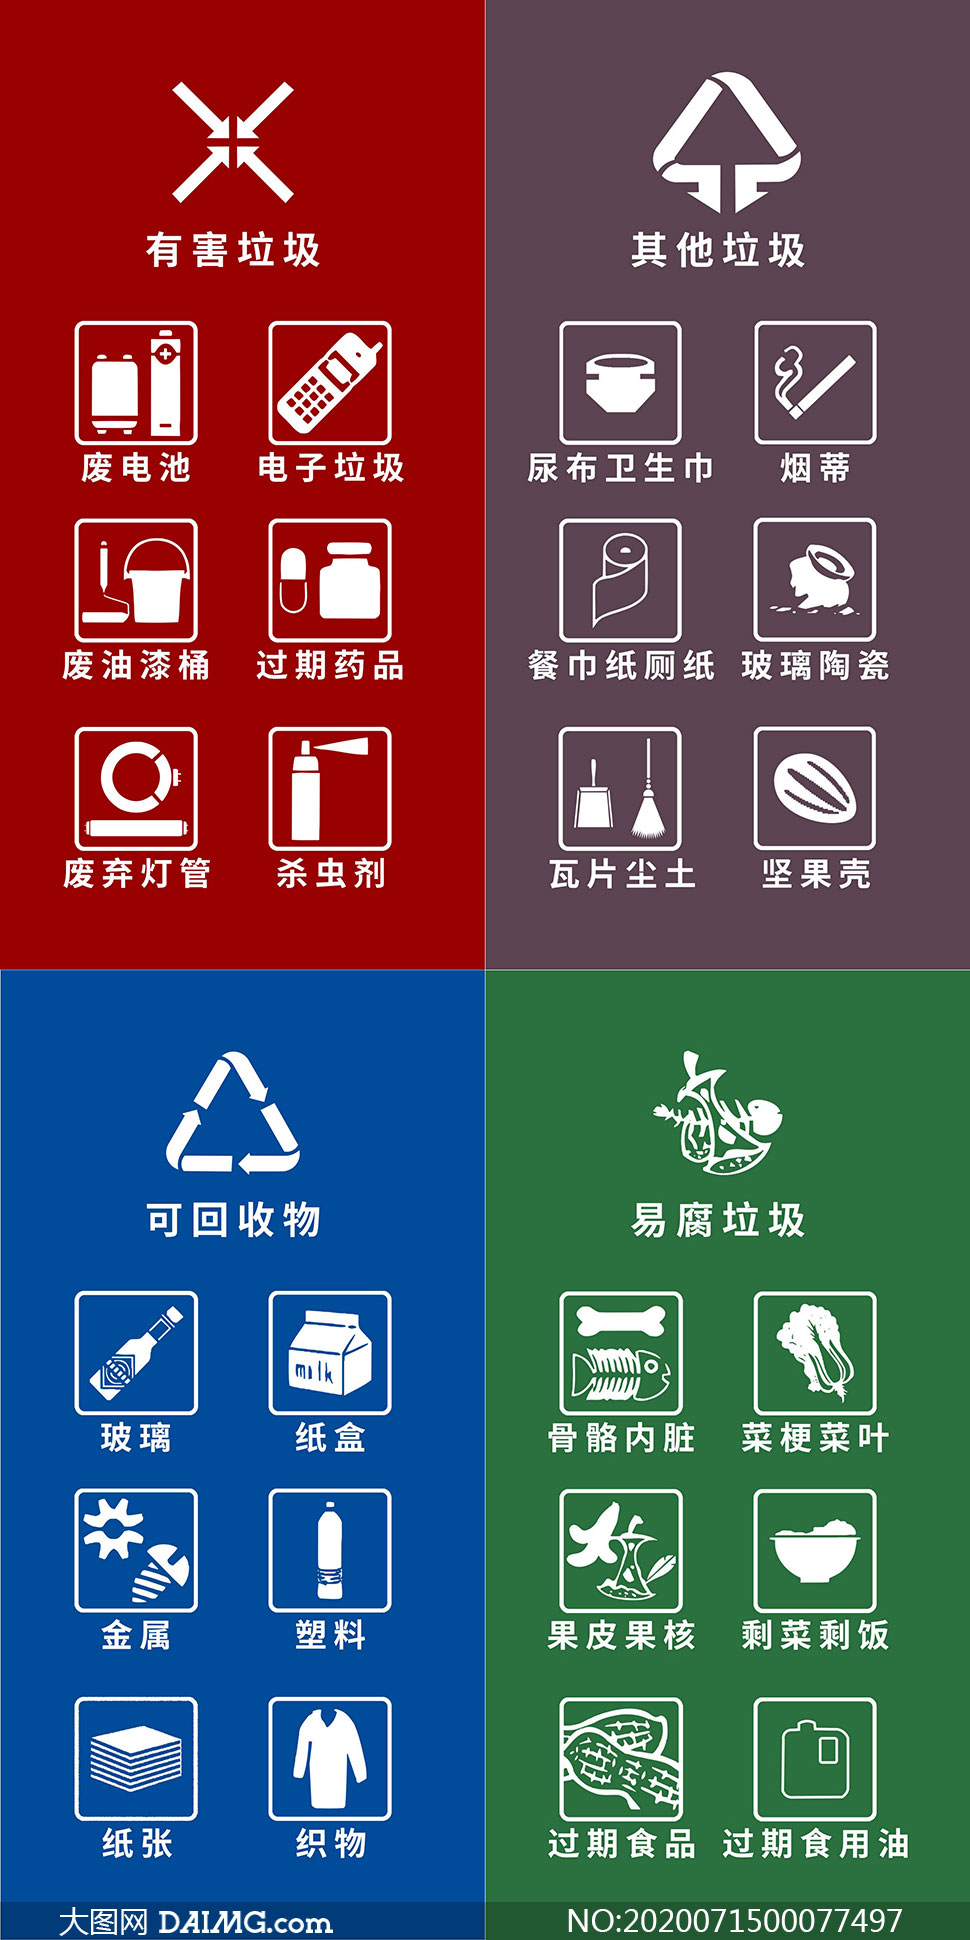 垃圾分类标志图 打印图片